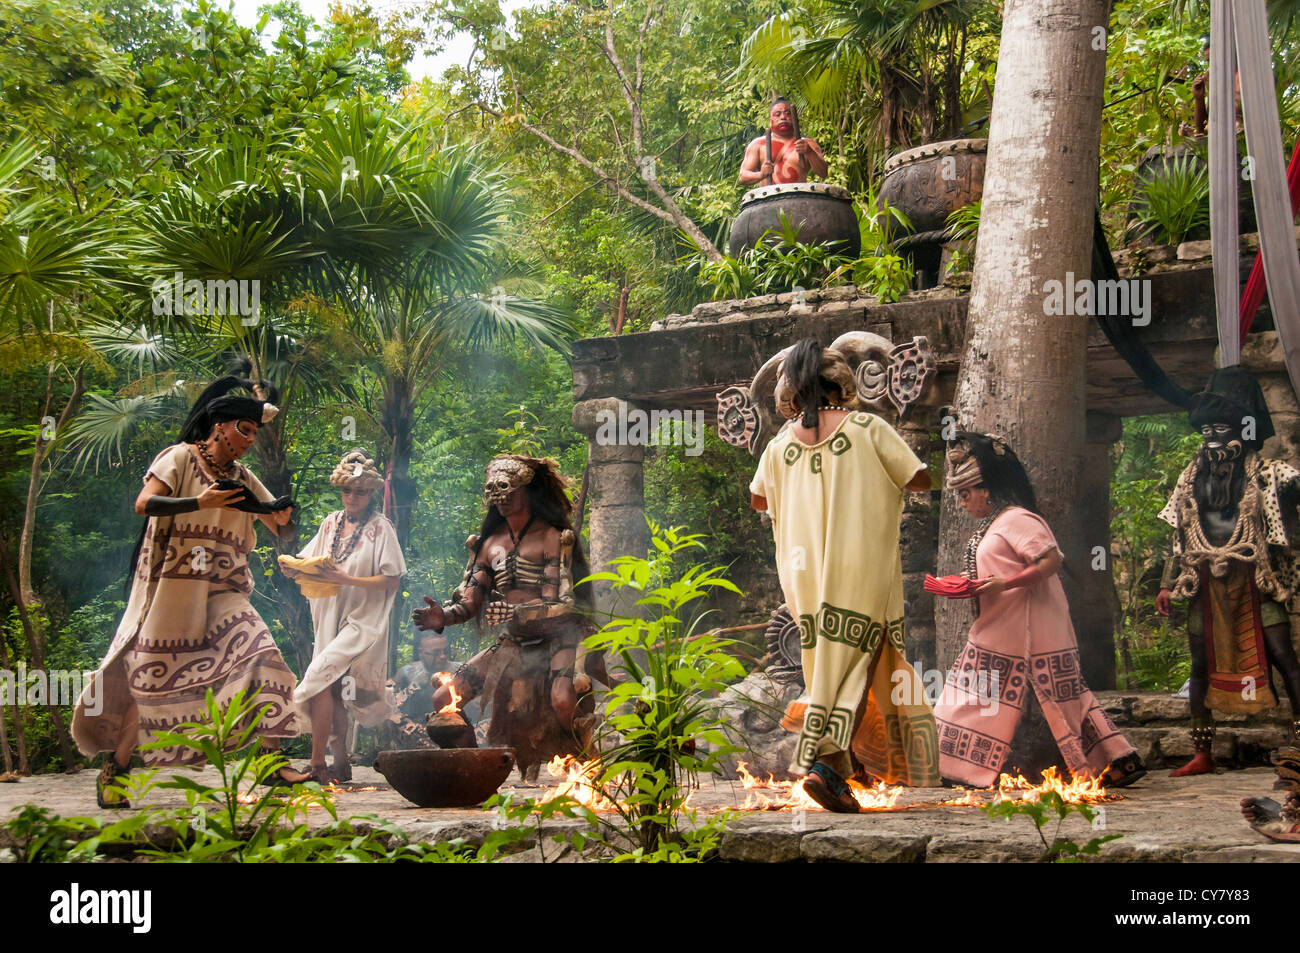 La culture maya performance 'Los Rostros de Ek chuah', en l'honneur du dieu Maya du cacao, au parc Xcaret, Riviera Maya, Mexique. Banque D'Images